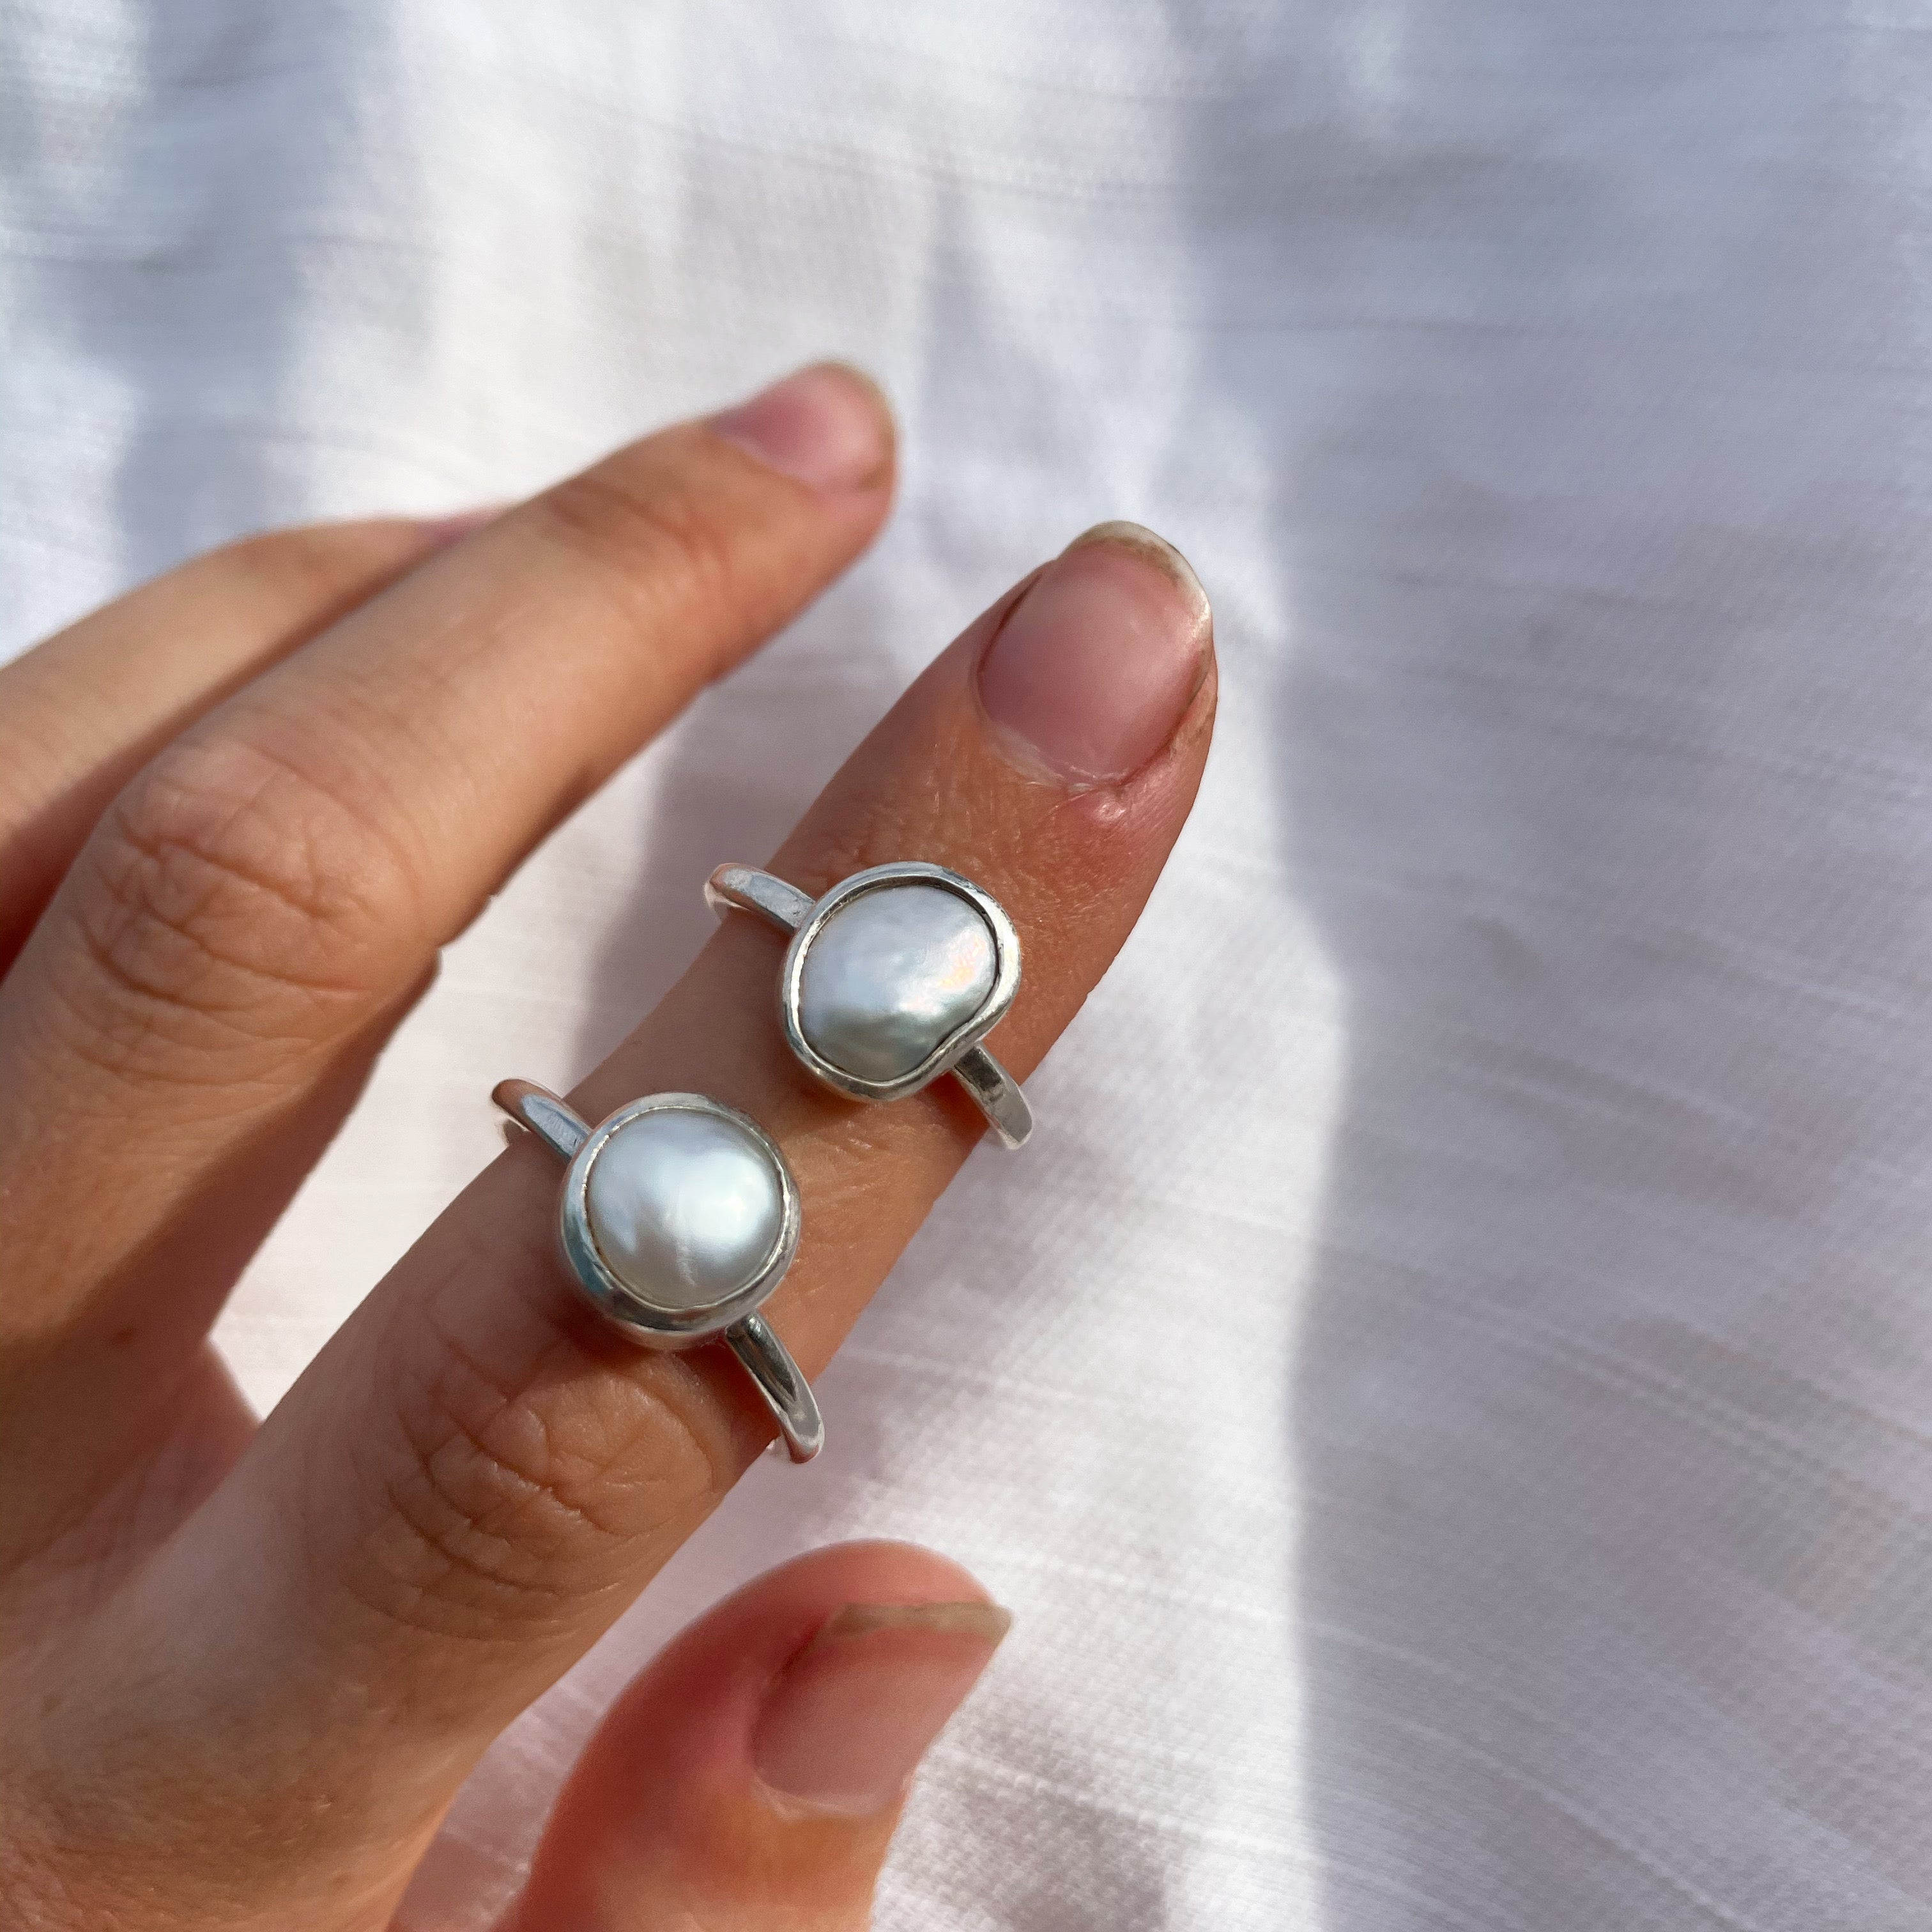 the OG pearl ring